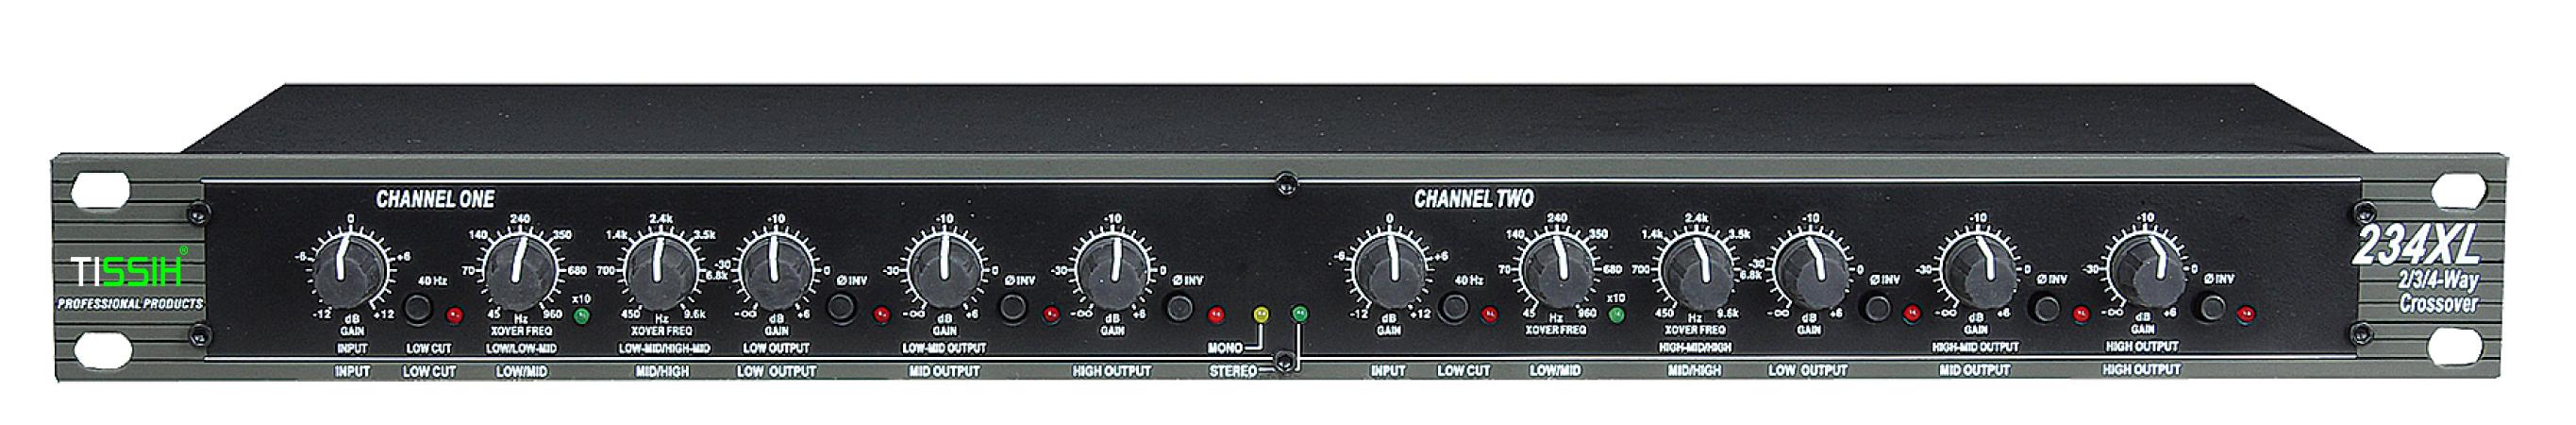 分频器 234xl - tissih蒂斯电声-专业音响设备制造商